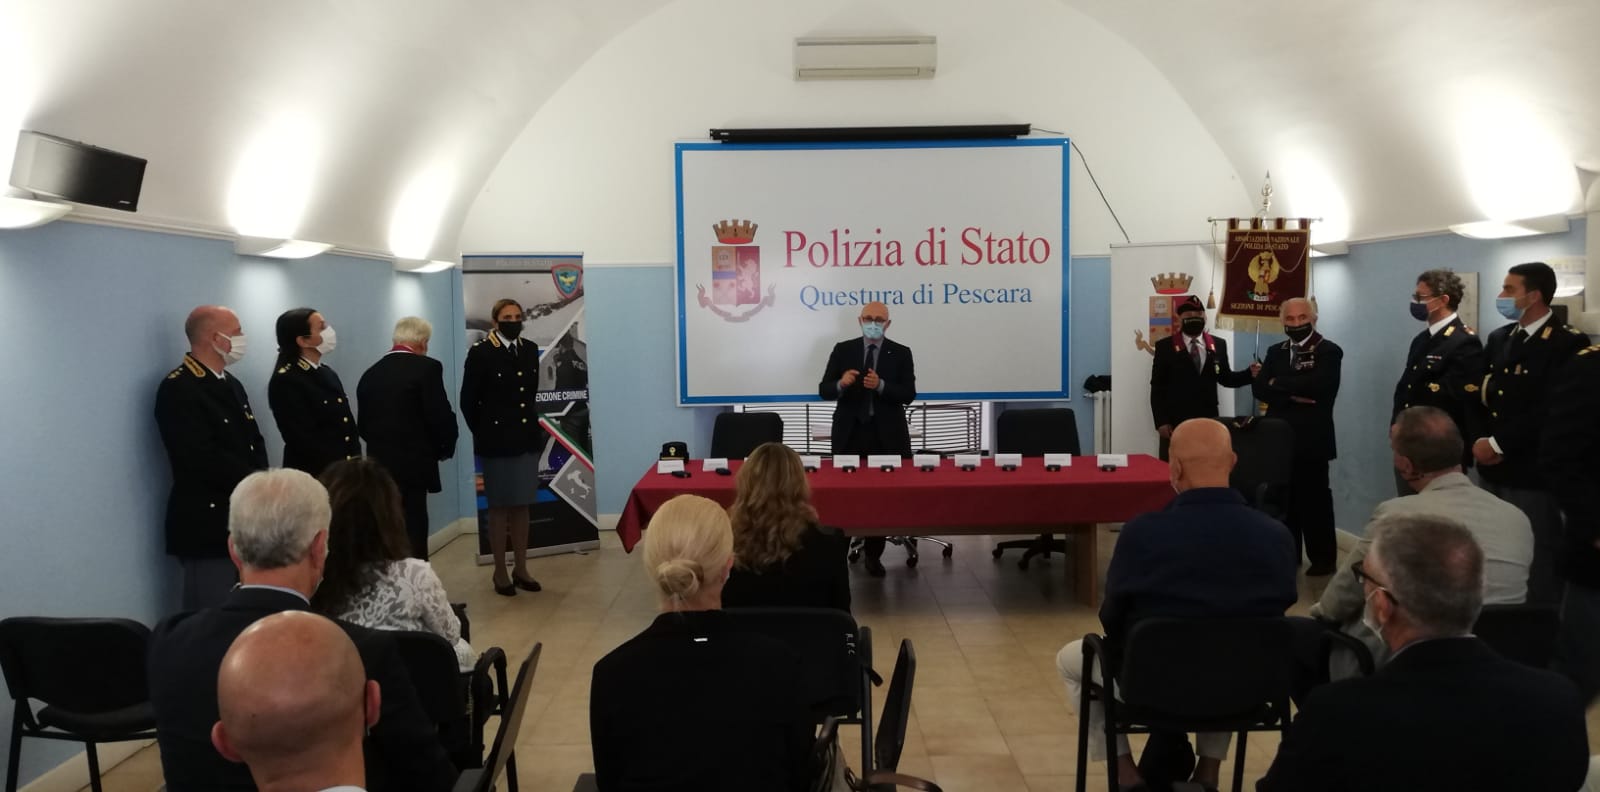 Celebrata a Pescara la festa di San Michele Arcangelo patrono della Polizia di Stato